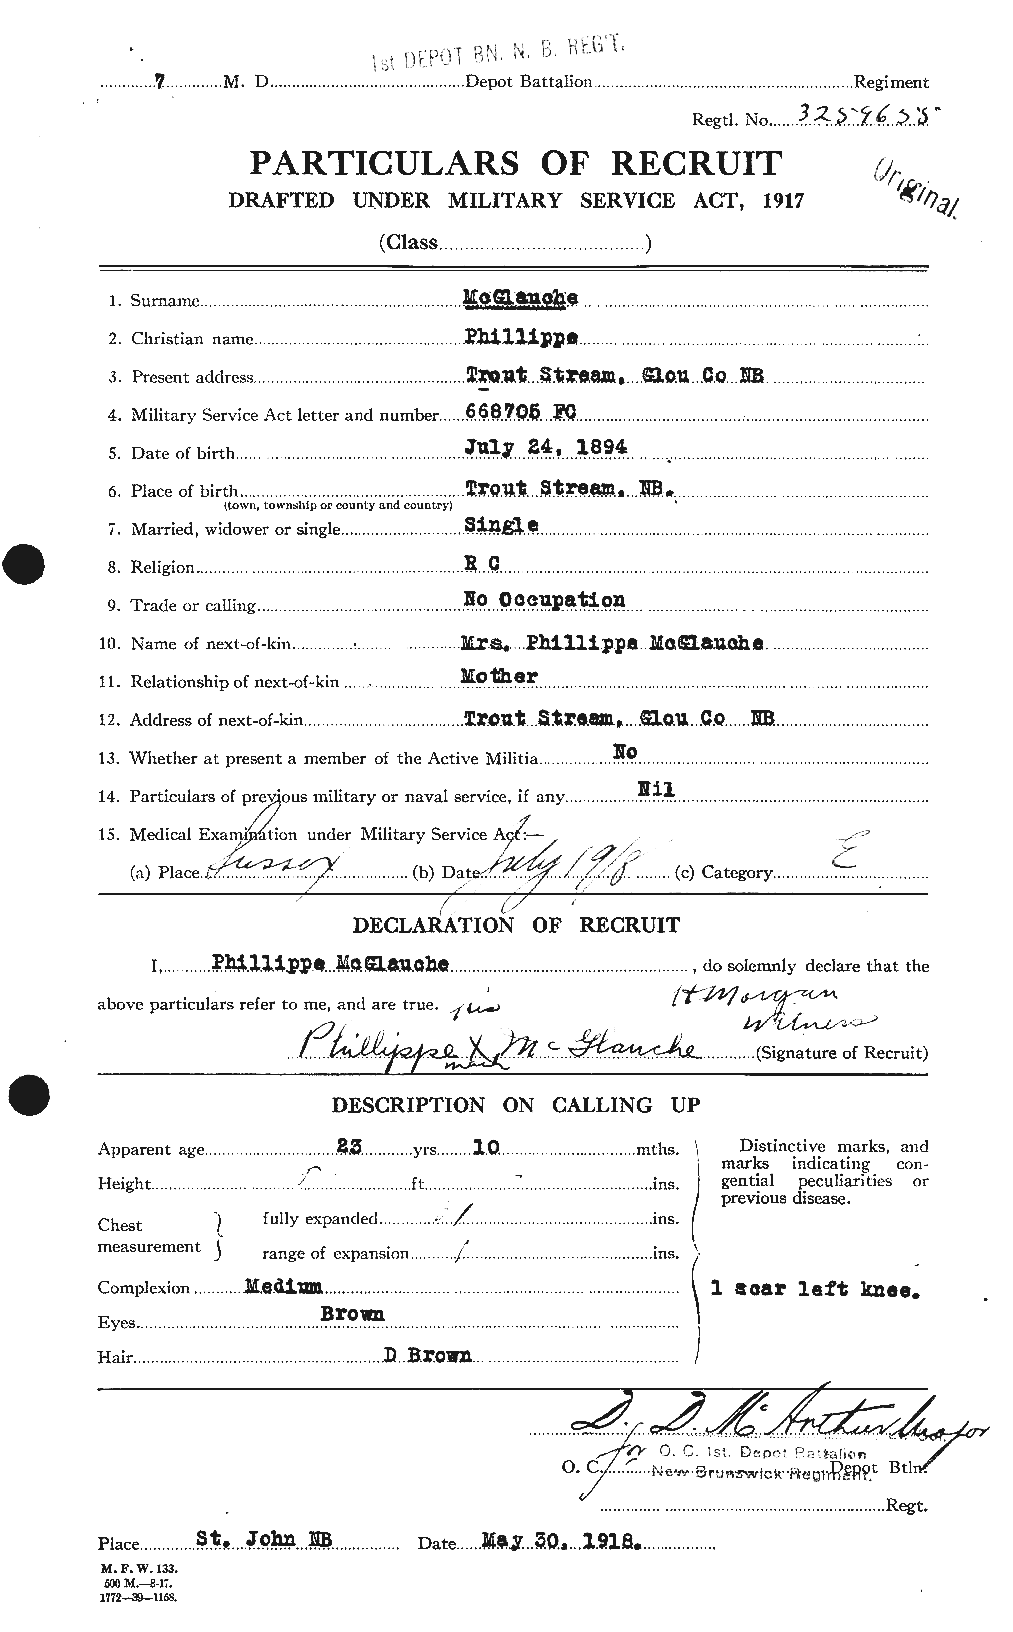 Dossiers du Personnel de la Première Guerre mondiale - CEC 528432a